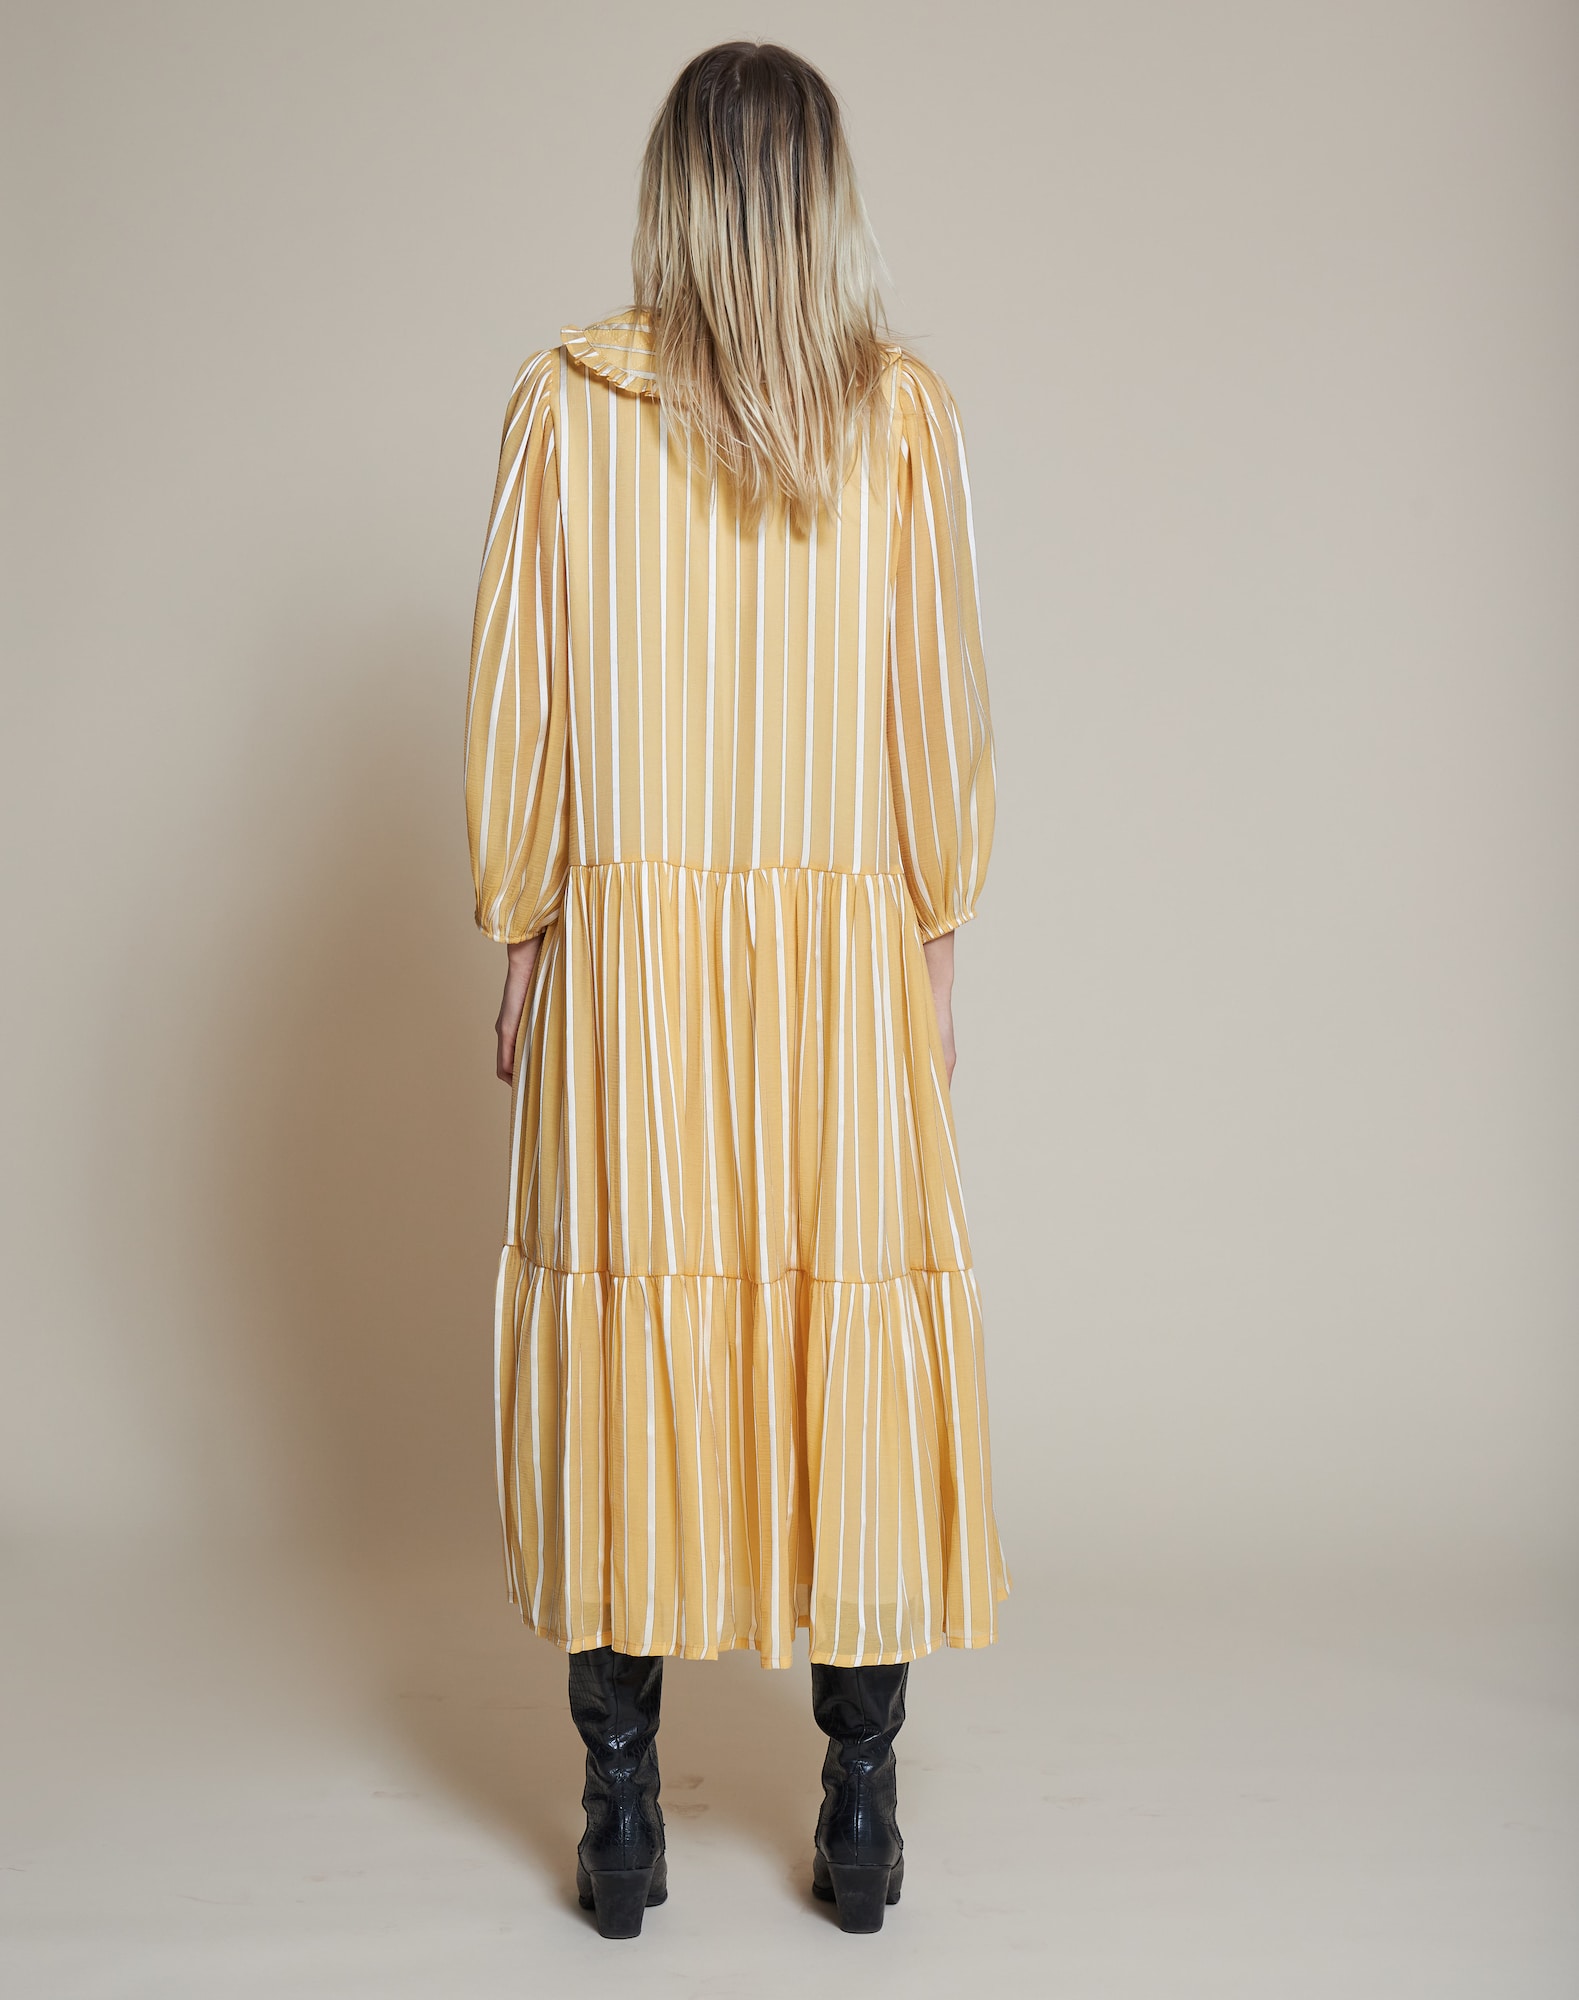 Stella Nova Košilové šaty 'Nimi' zlatě žlutá / bílá